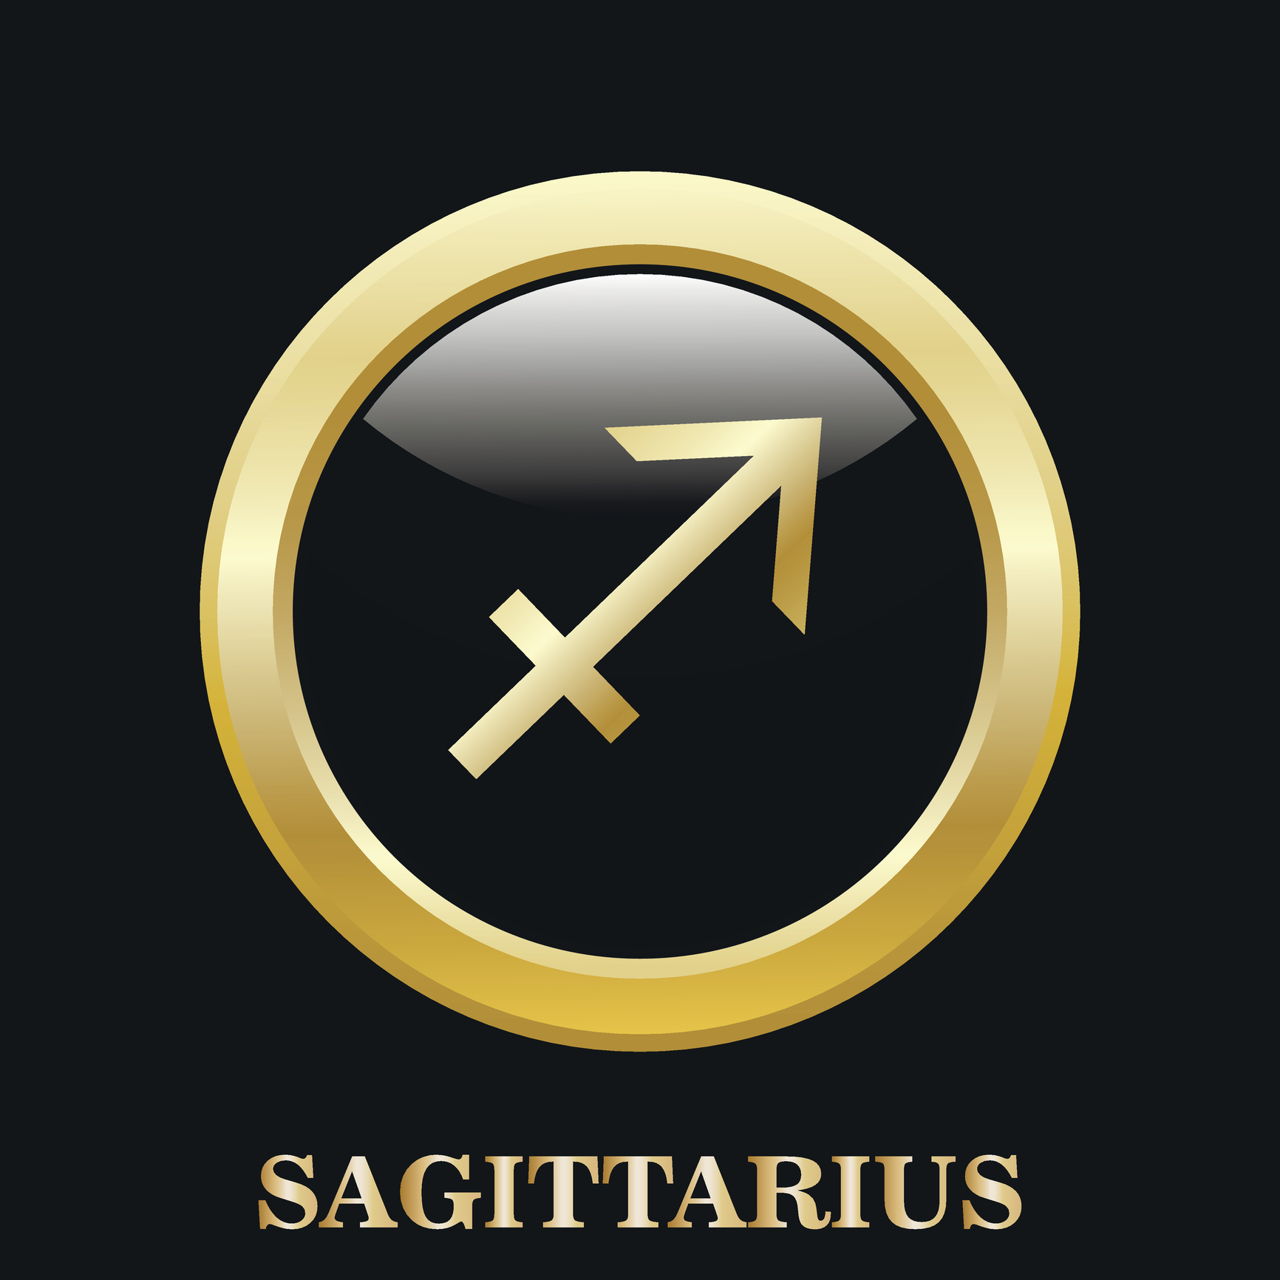 What symbol is Sagittarius?